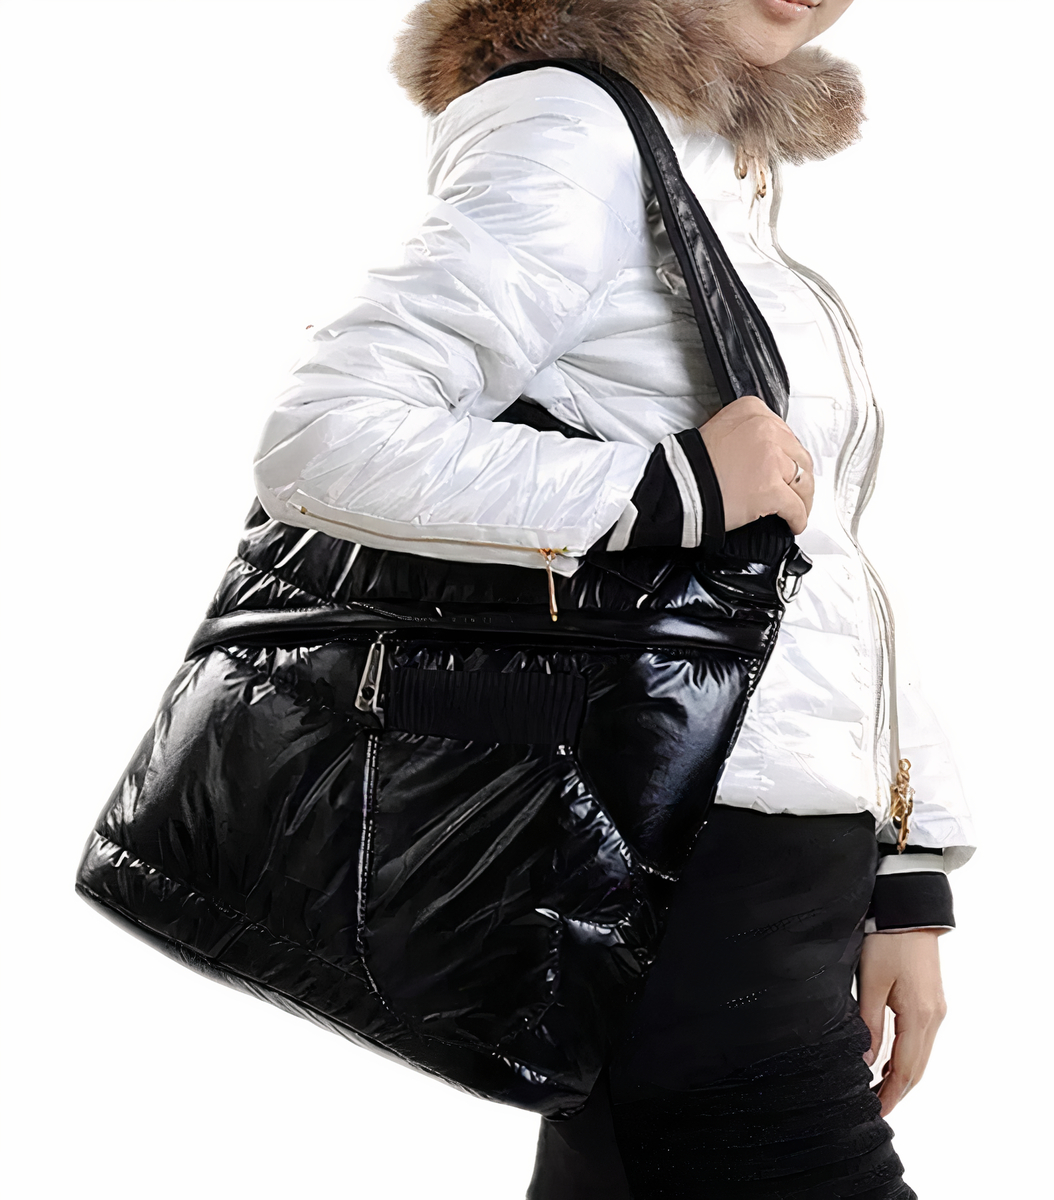 Femme de côté sans visage avec une doudoune blanche à fourrure marron qui porte un sac doudoune rectangulaire en vernis noir sur l'épaule.